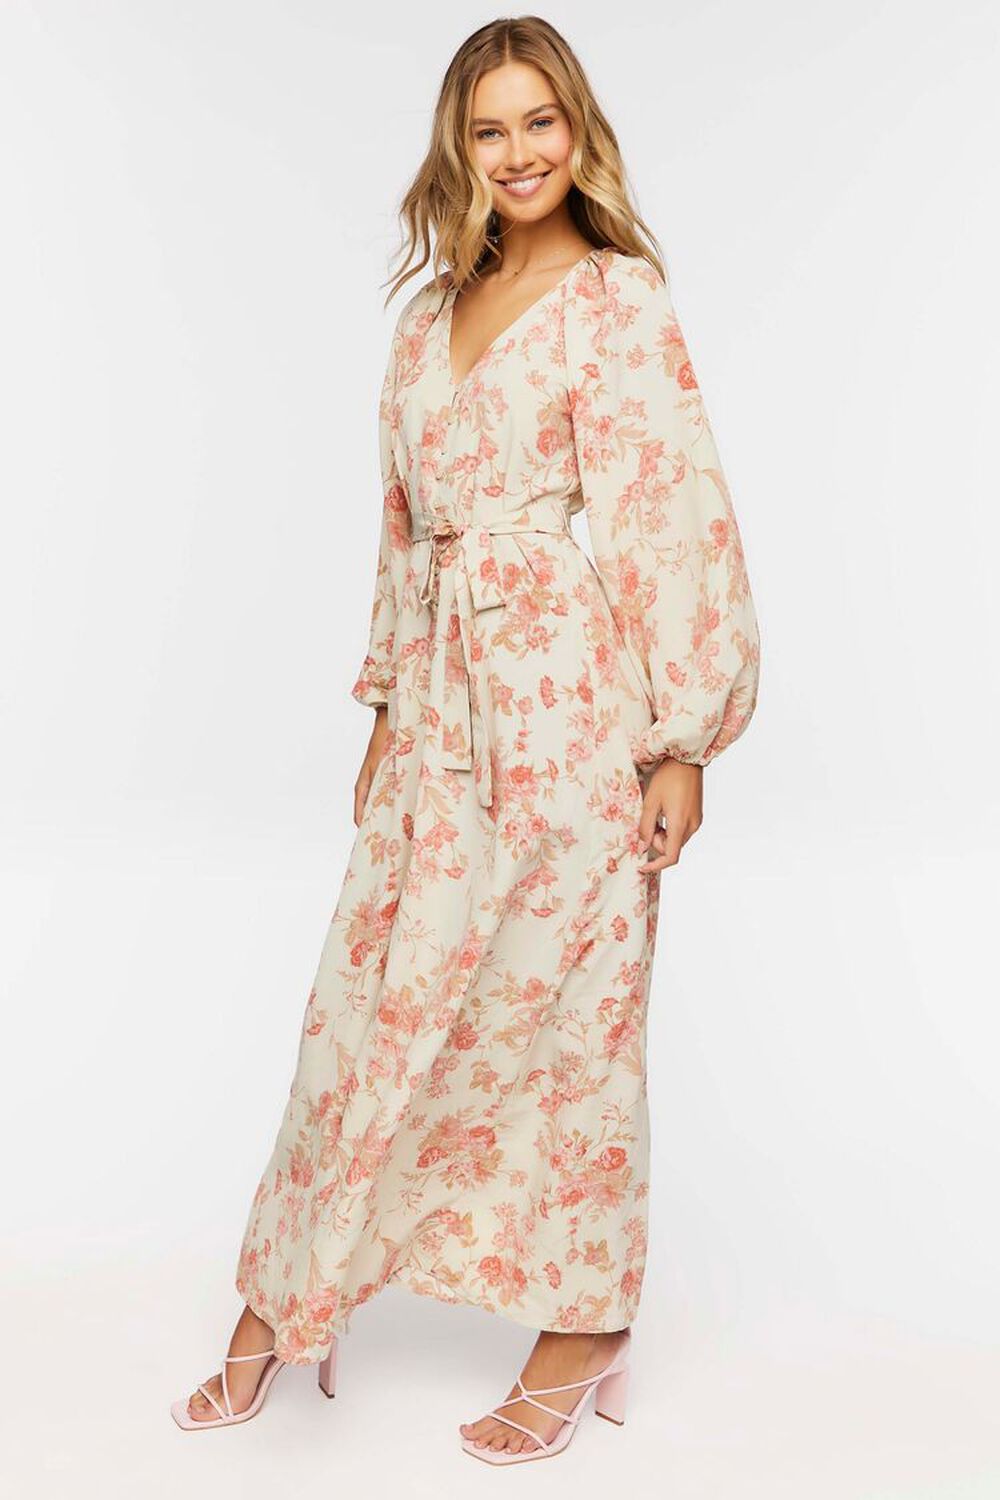 BEIGE/MULTI Floral Belted Maxi Dress, image 2